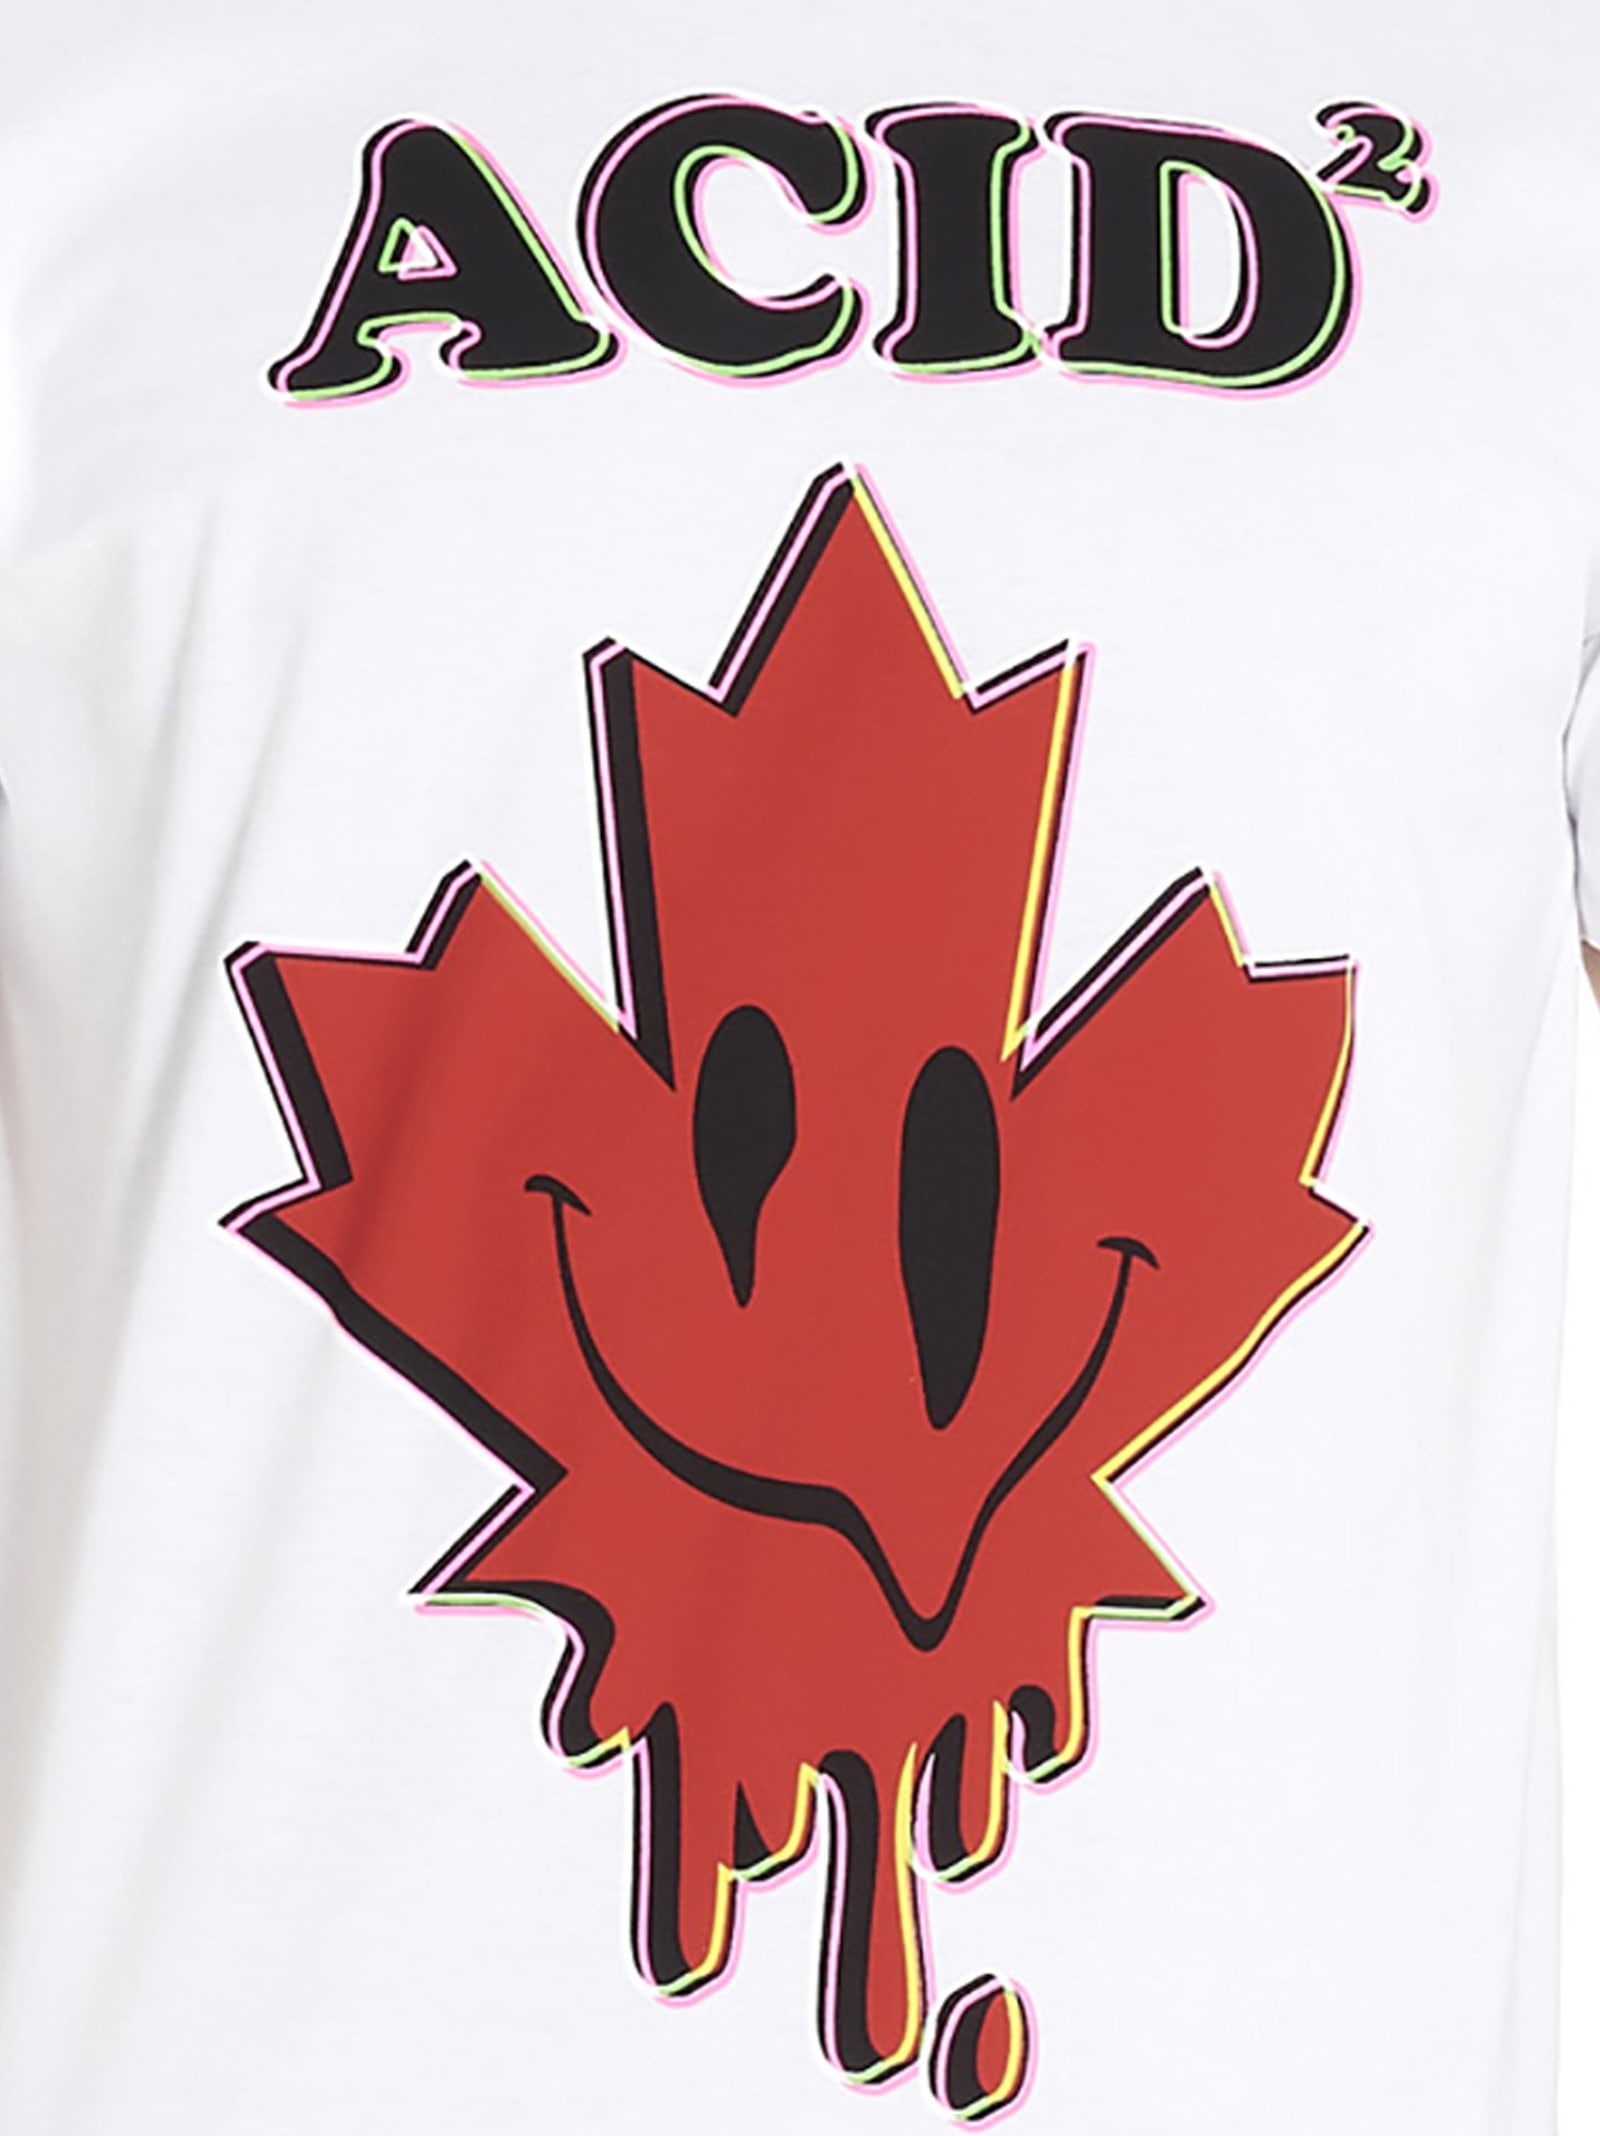 dsquared2 acid t shirt